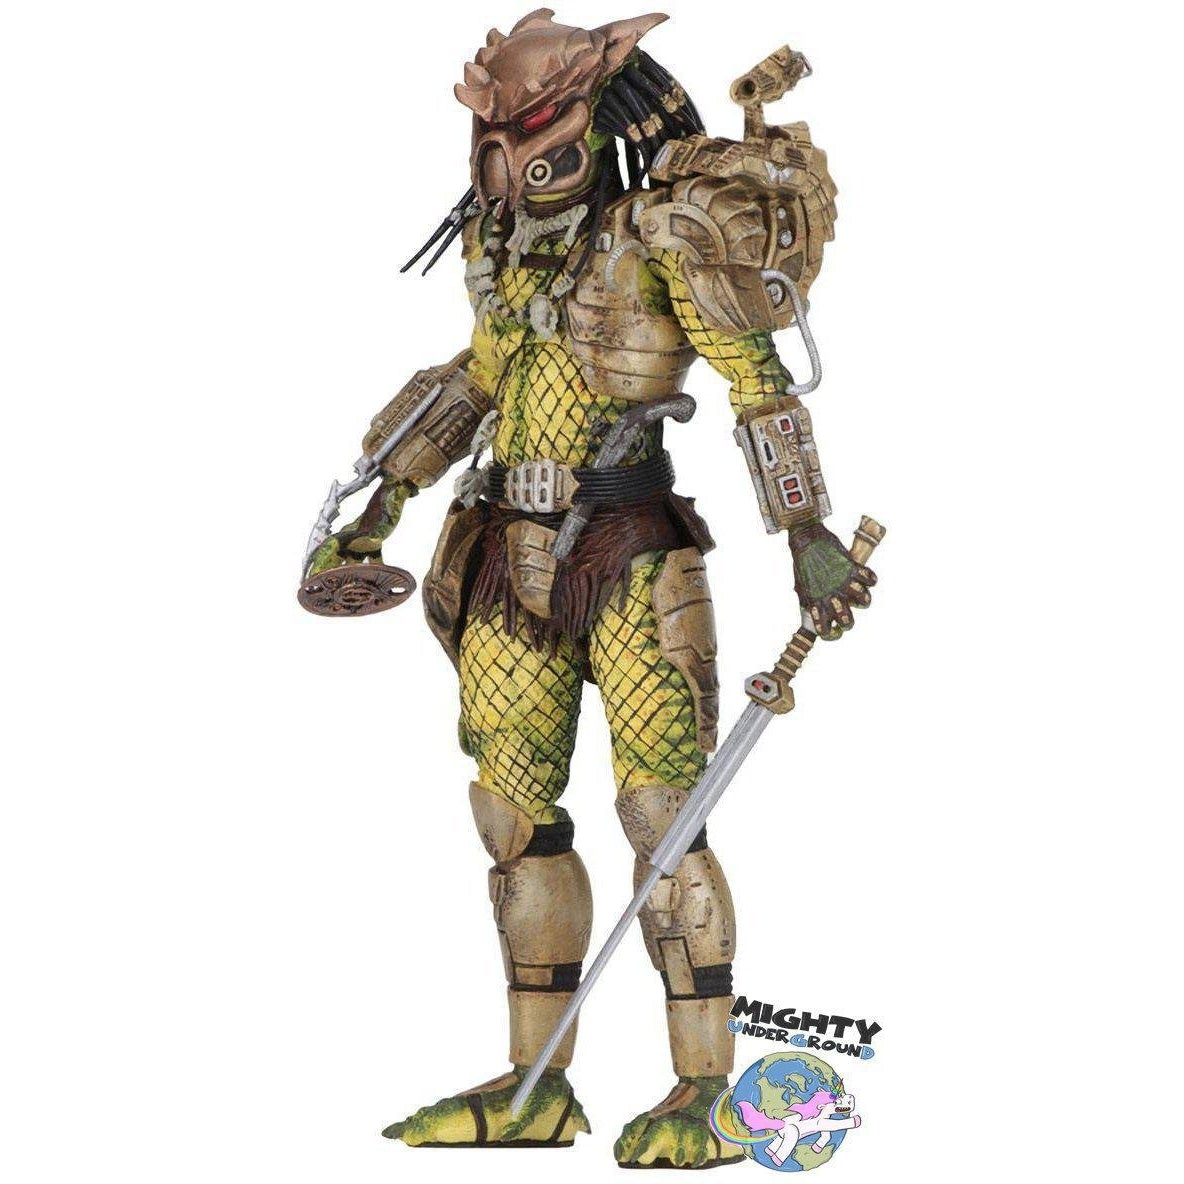 Predator: Ultimate Elder: The Golden Angel-Actionfiguren-NECA-Mighty Underground